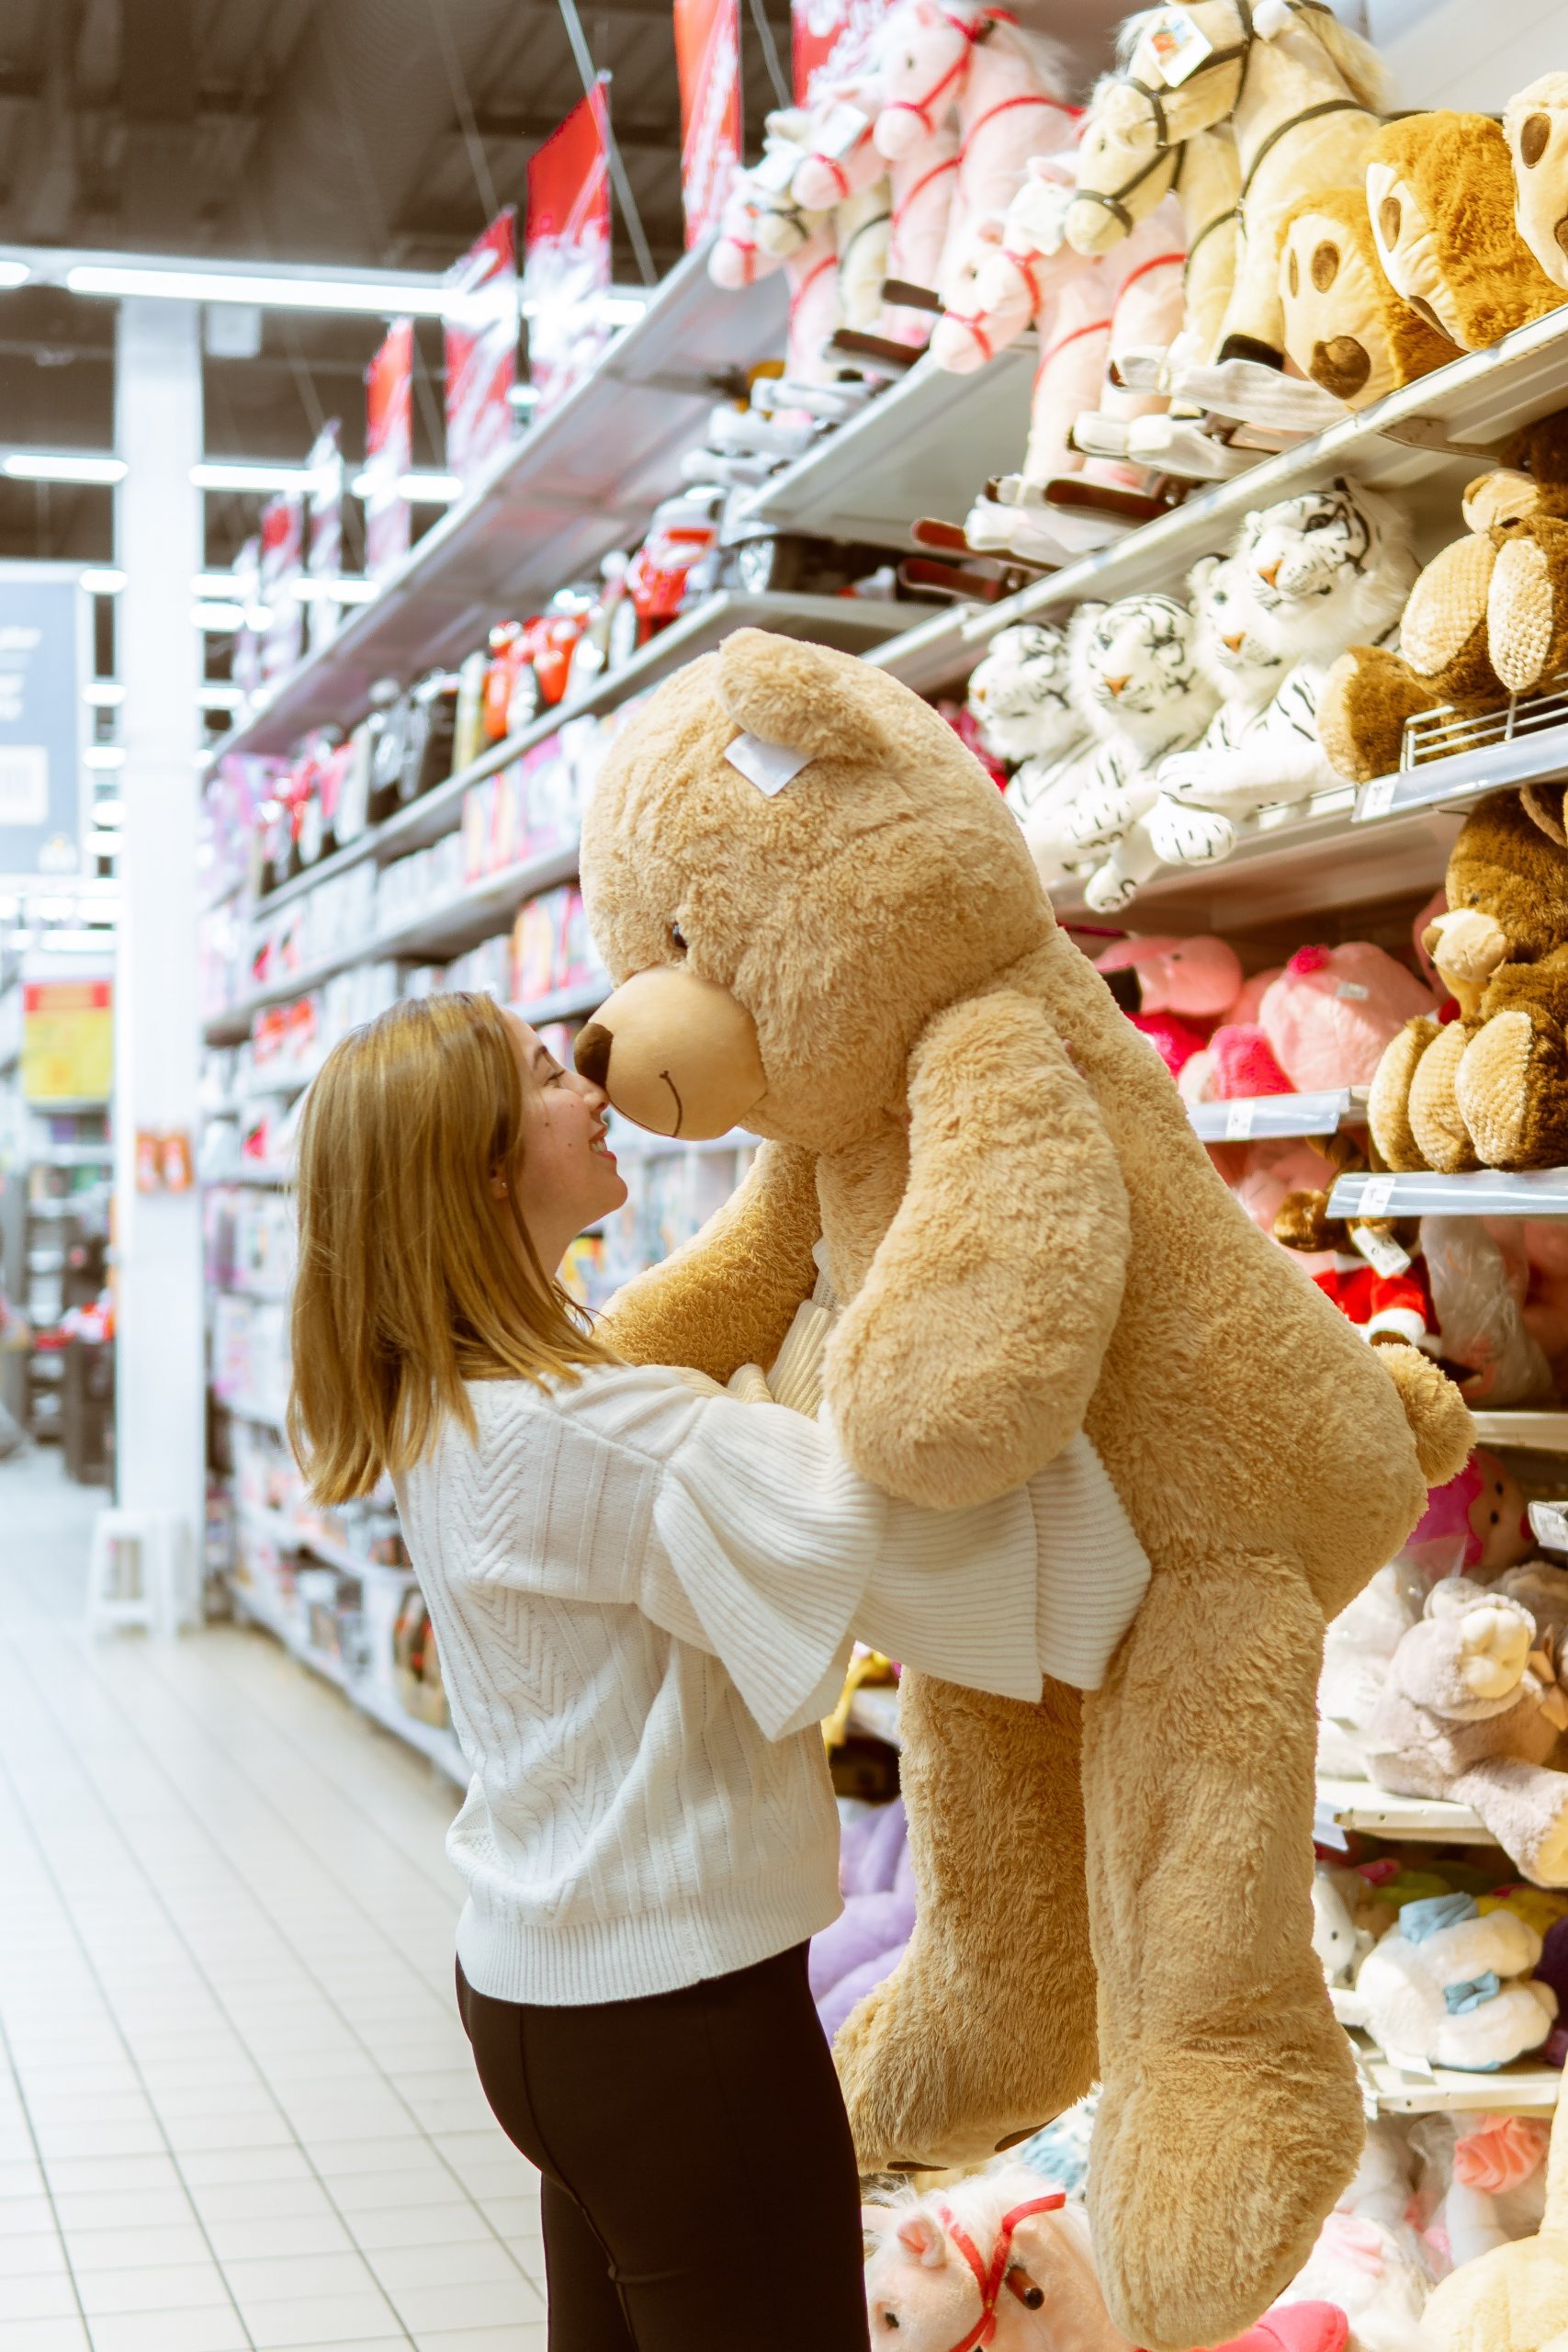 Das Bild zeigt eine Frau mit einem Teddybär im Arm.